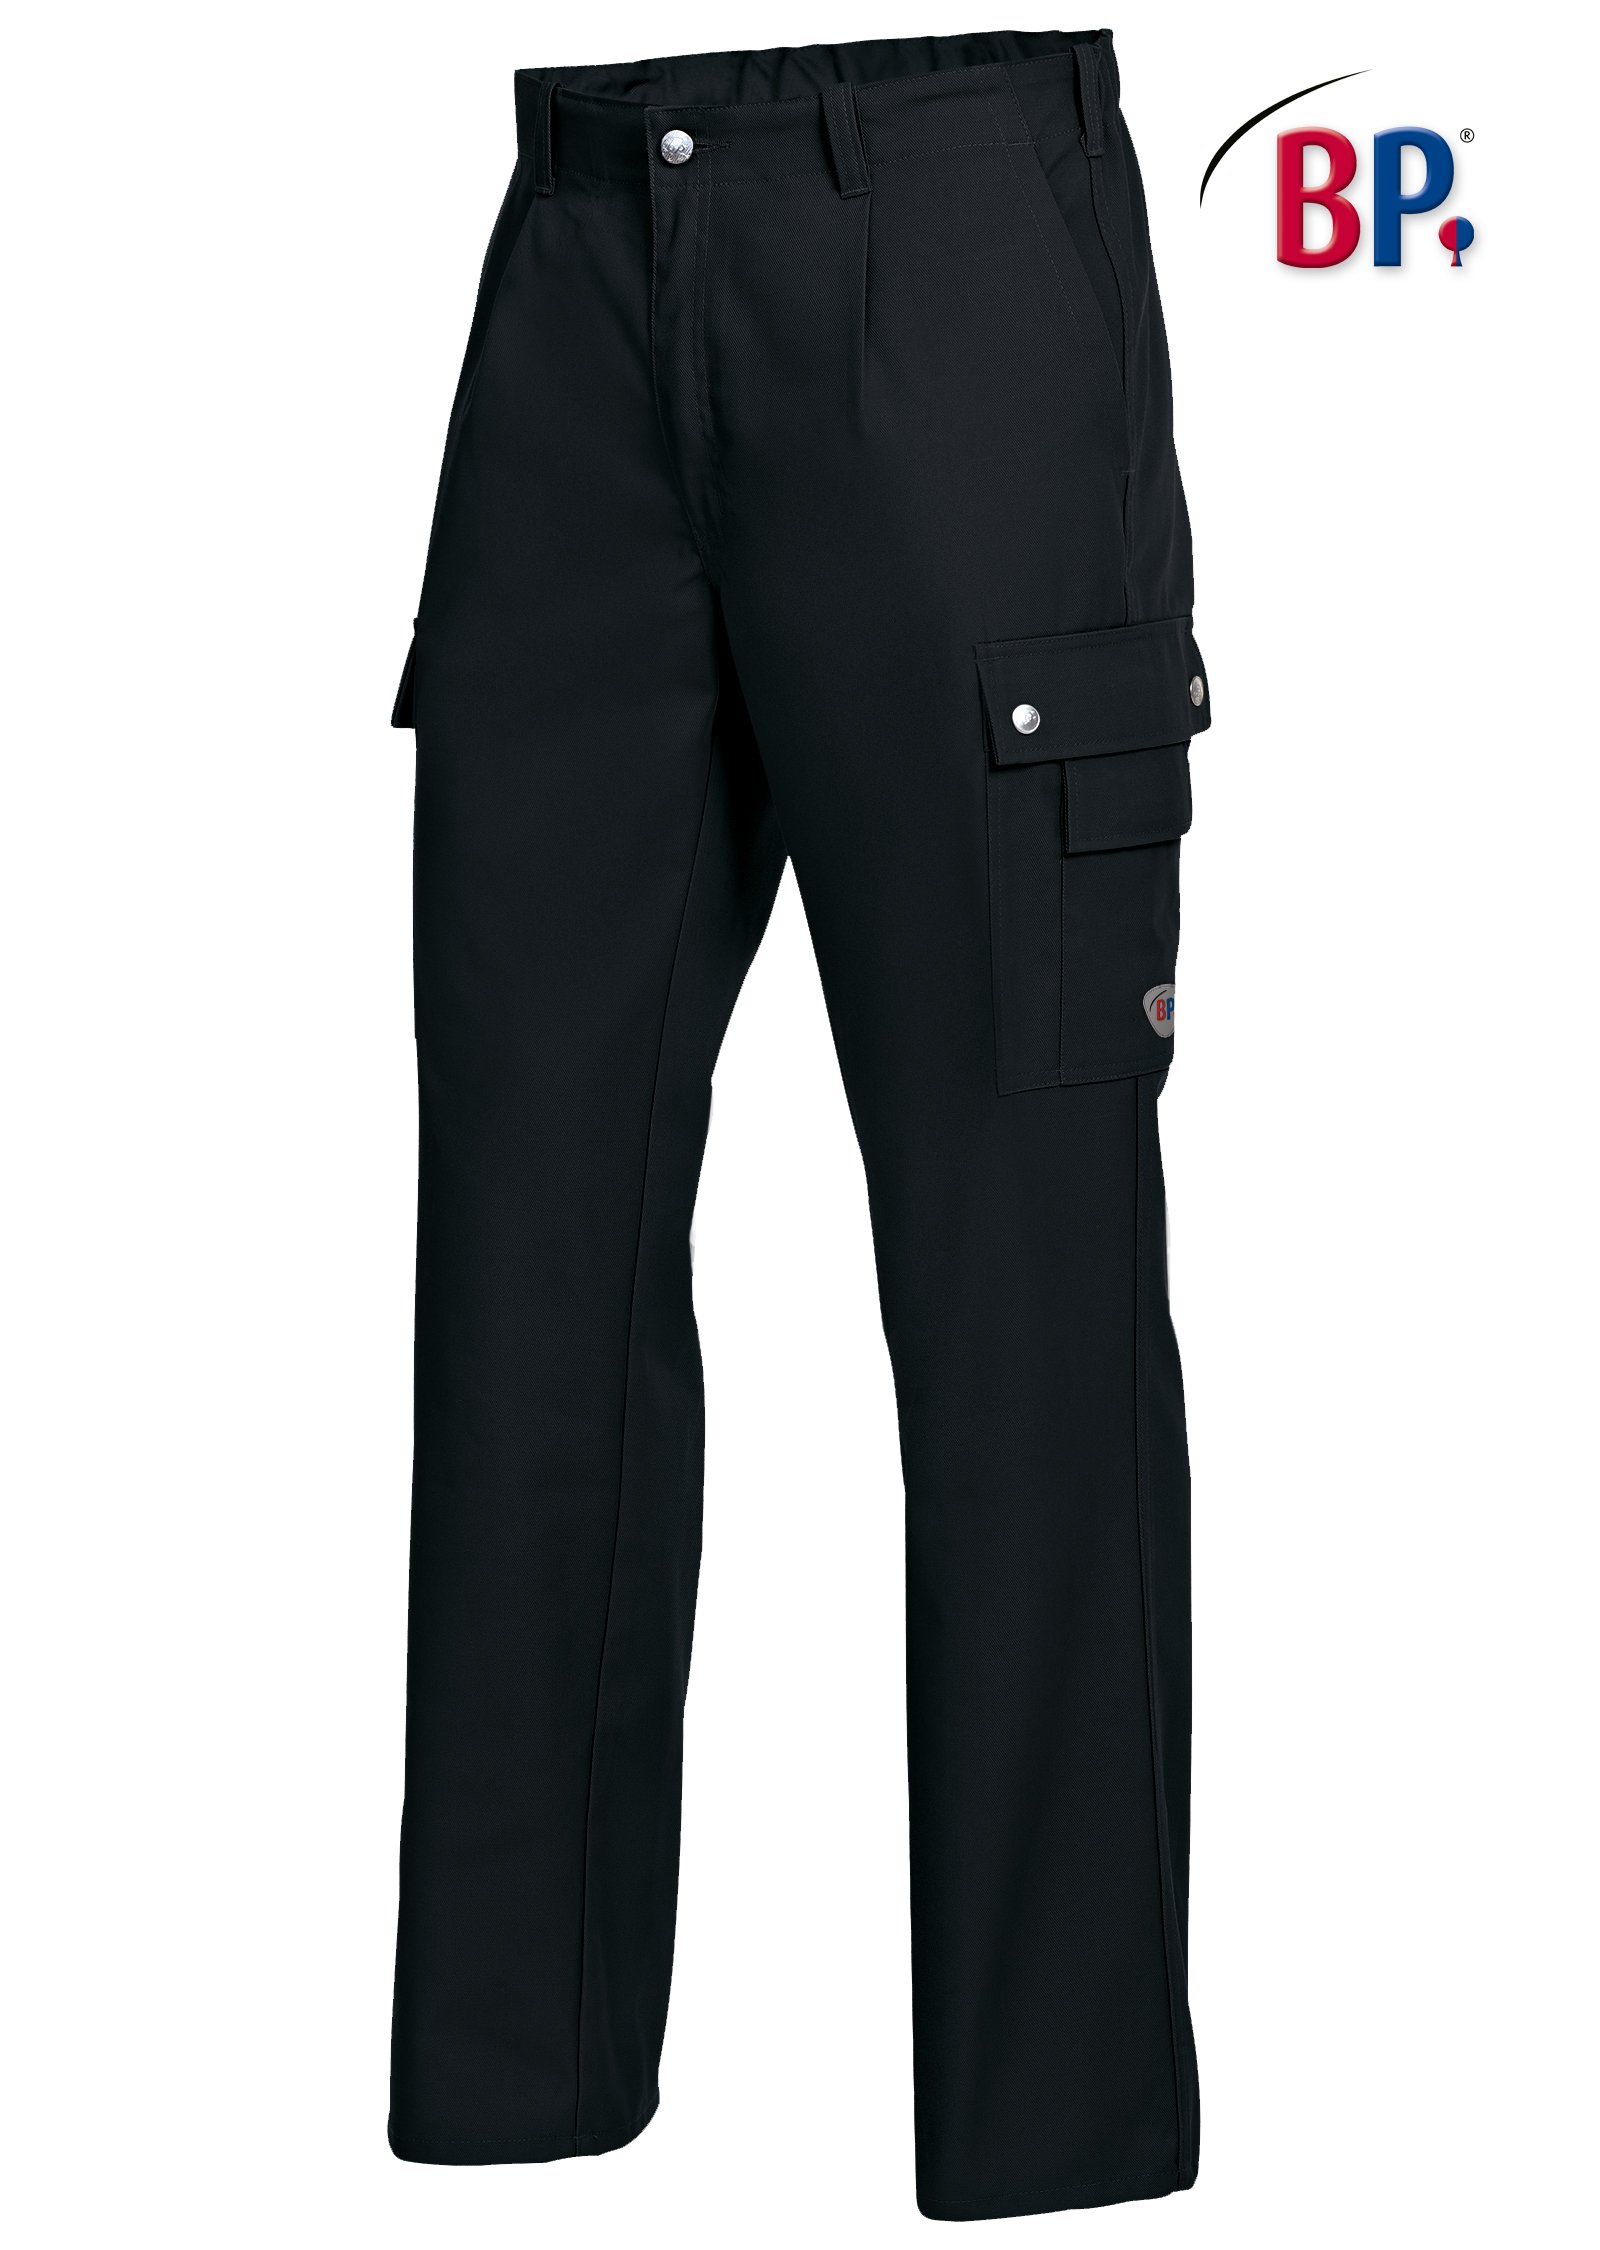 BP Arbeitshose für Herren 1960-570 Workwear Arbeitsschutz Hose Arbeitskleidung 